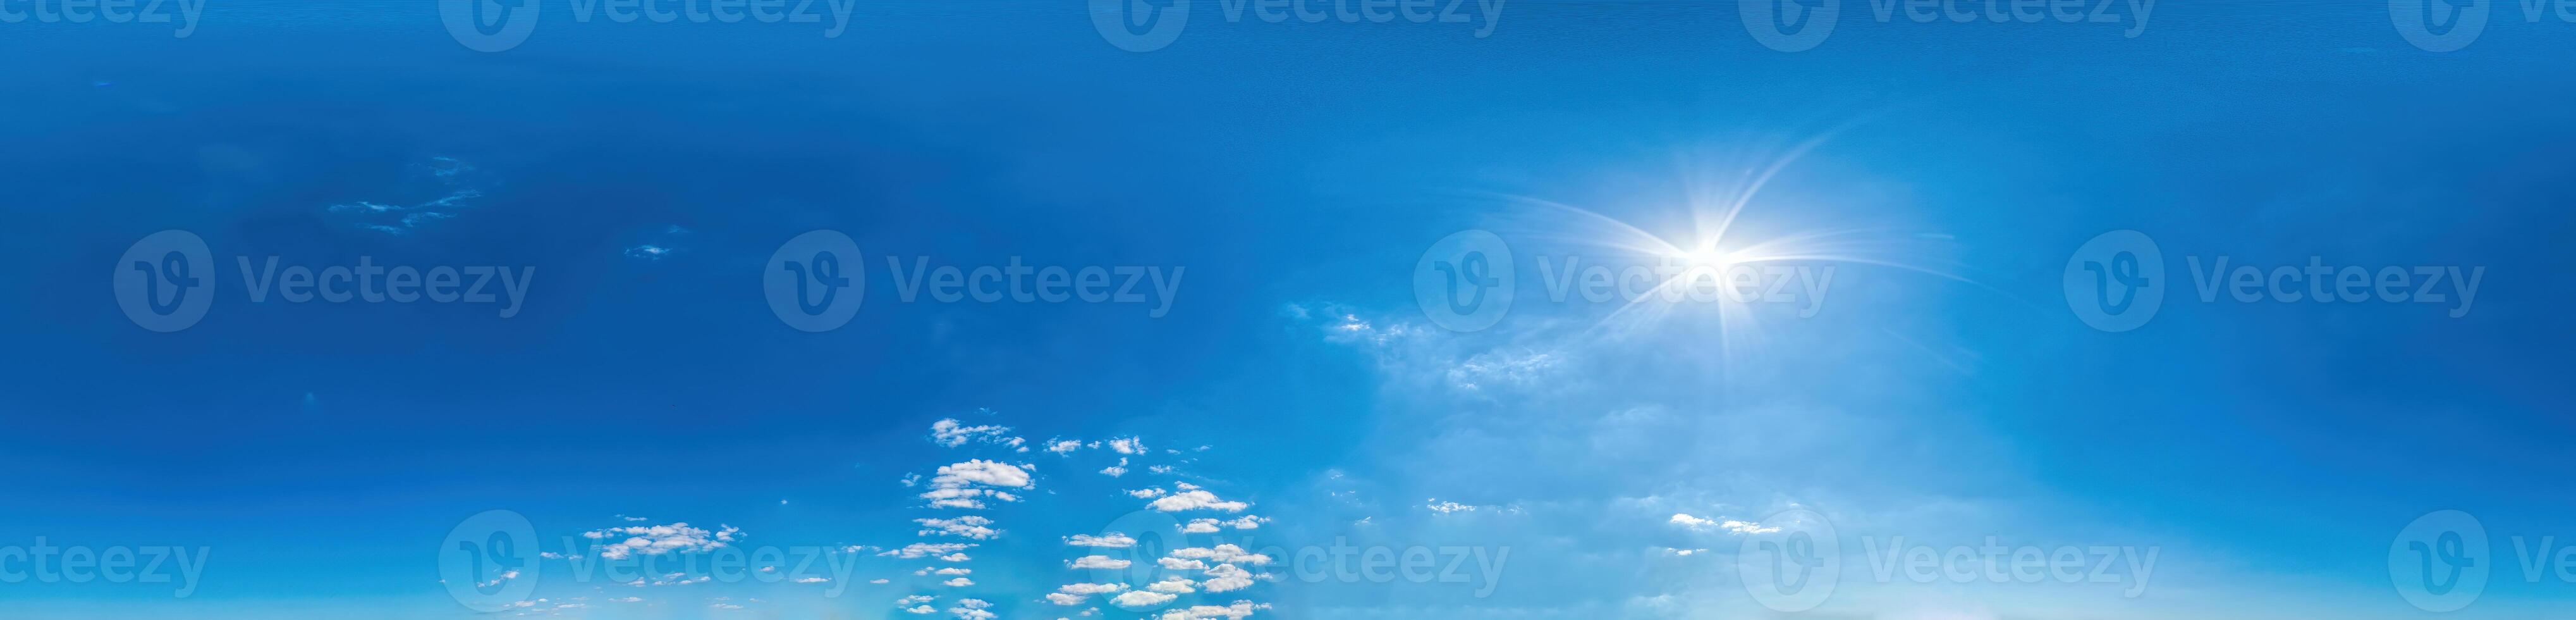 ciel bleu avec nuages légers panorama harmonieux au format sphérique équirectangulaire avec zénith complet pour une utilisation dans les graphiques 3D, les jeux et pour les composites dans les drones aériens panoramas à 360 degrés en tant que dôme du ciel photo